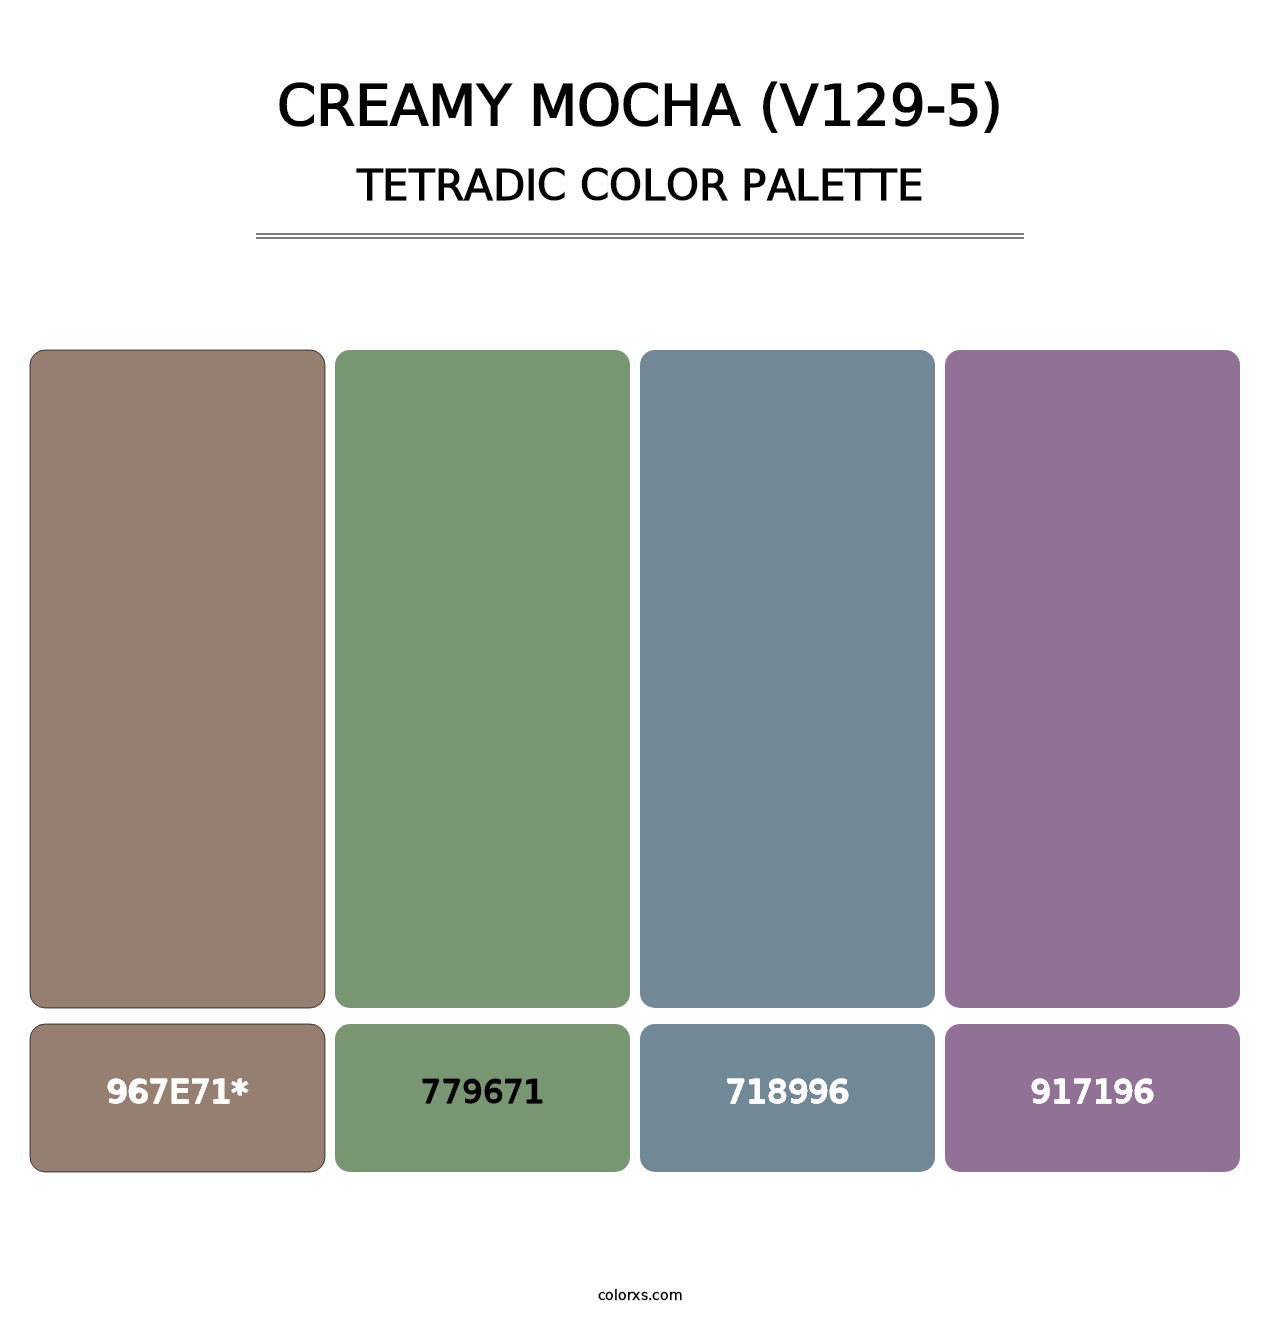 Creamy Mocha (V129-5) - Tetradic Color Palette